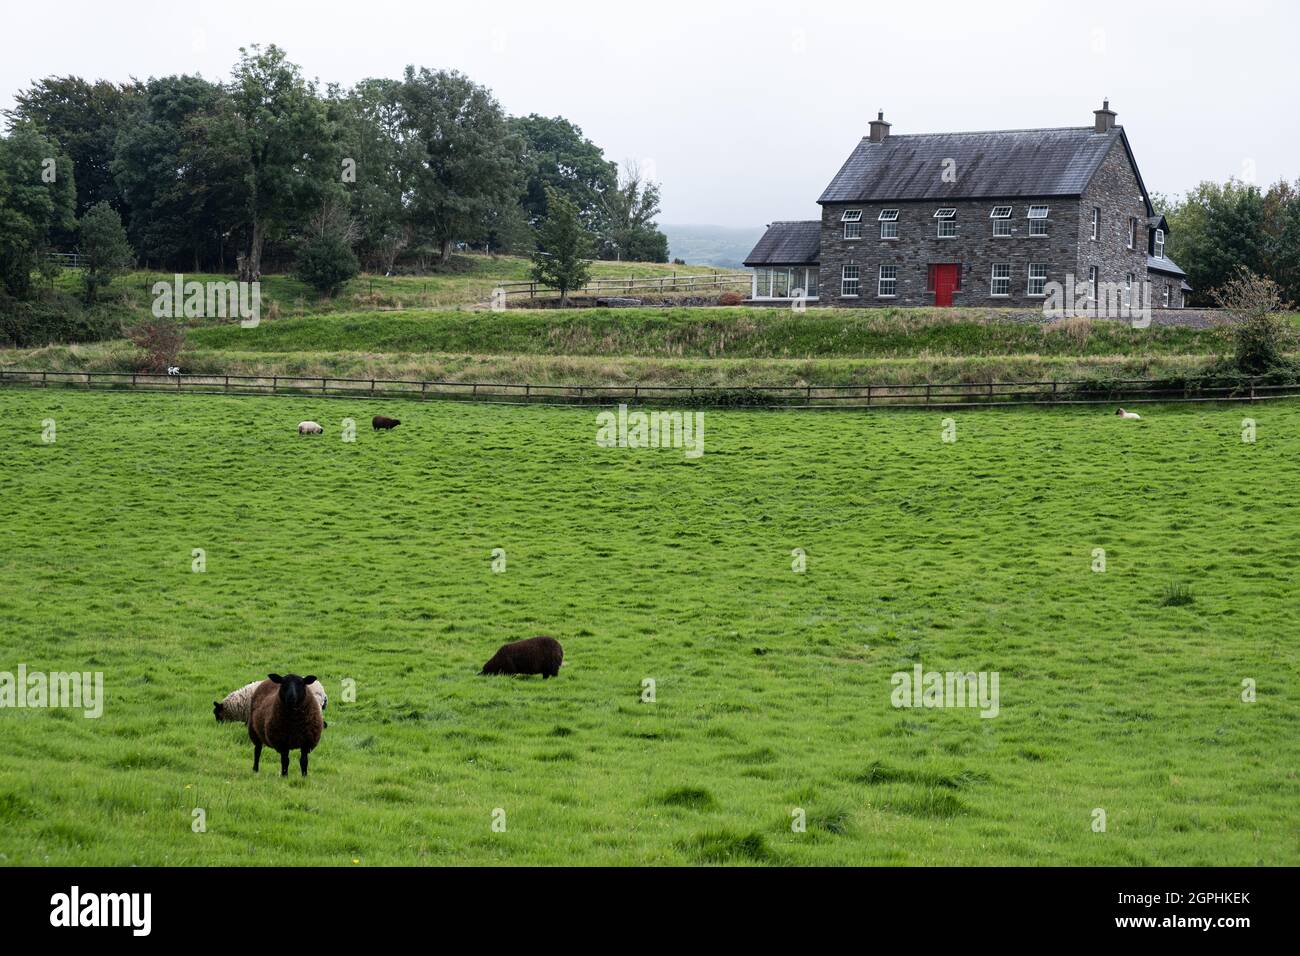 Typisch irisches Bauernhaus mit grünem Gras und Hausmantel Tiere. Irland, Europa Stockfoto